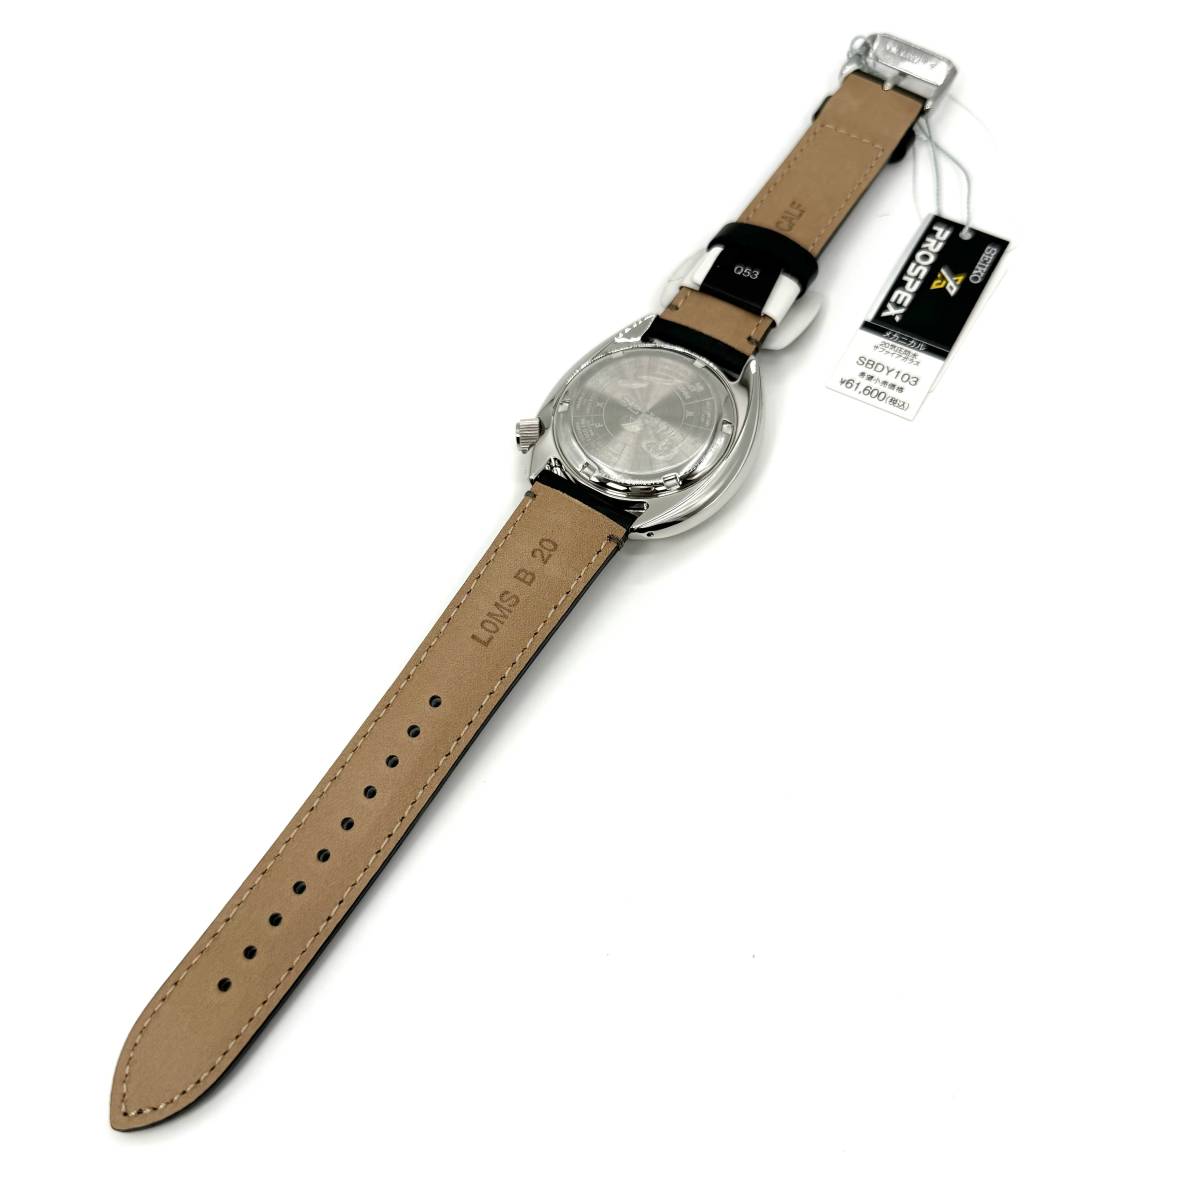 新品正規品『SEIKO PROSPEX FIELDMASTER』セイコー プロスペックス フィールドマスター 自動巻き腕時計 メンズ  SBDY103【送料無料】